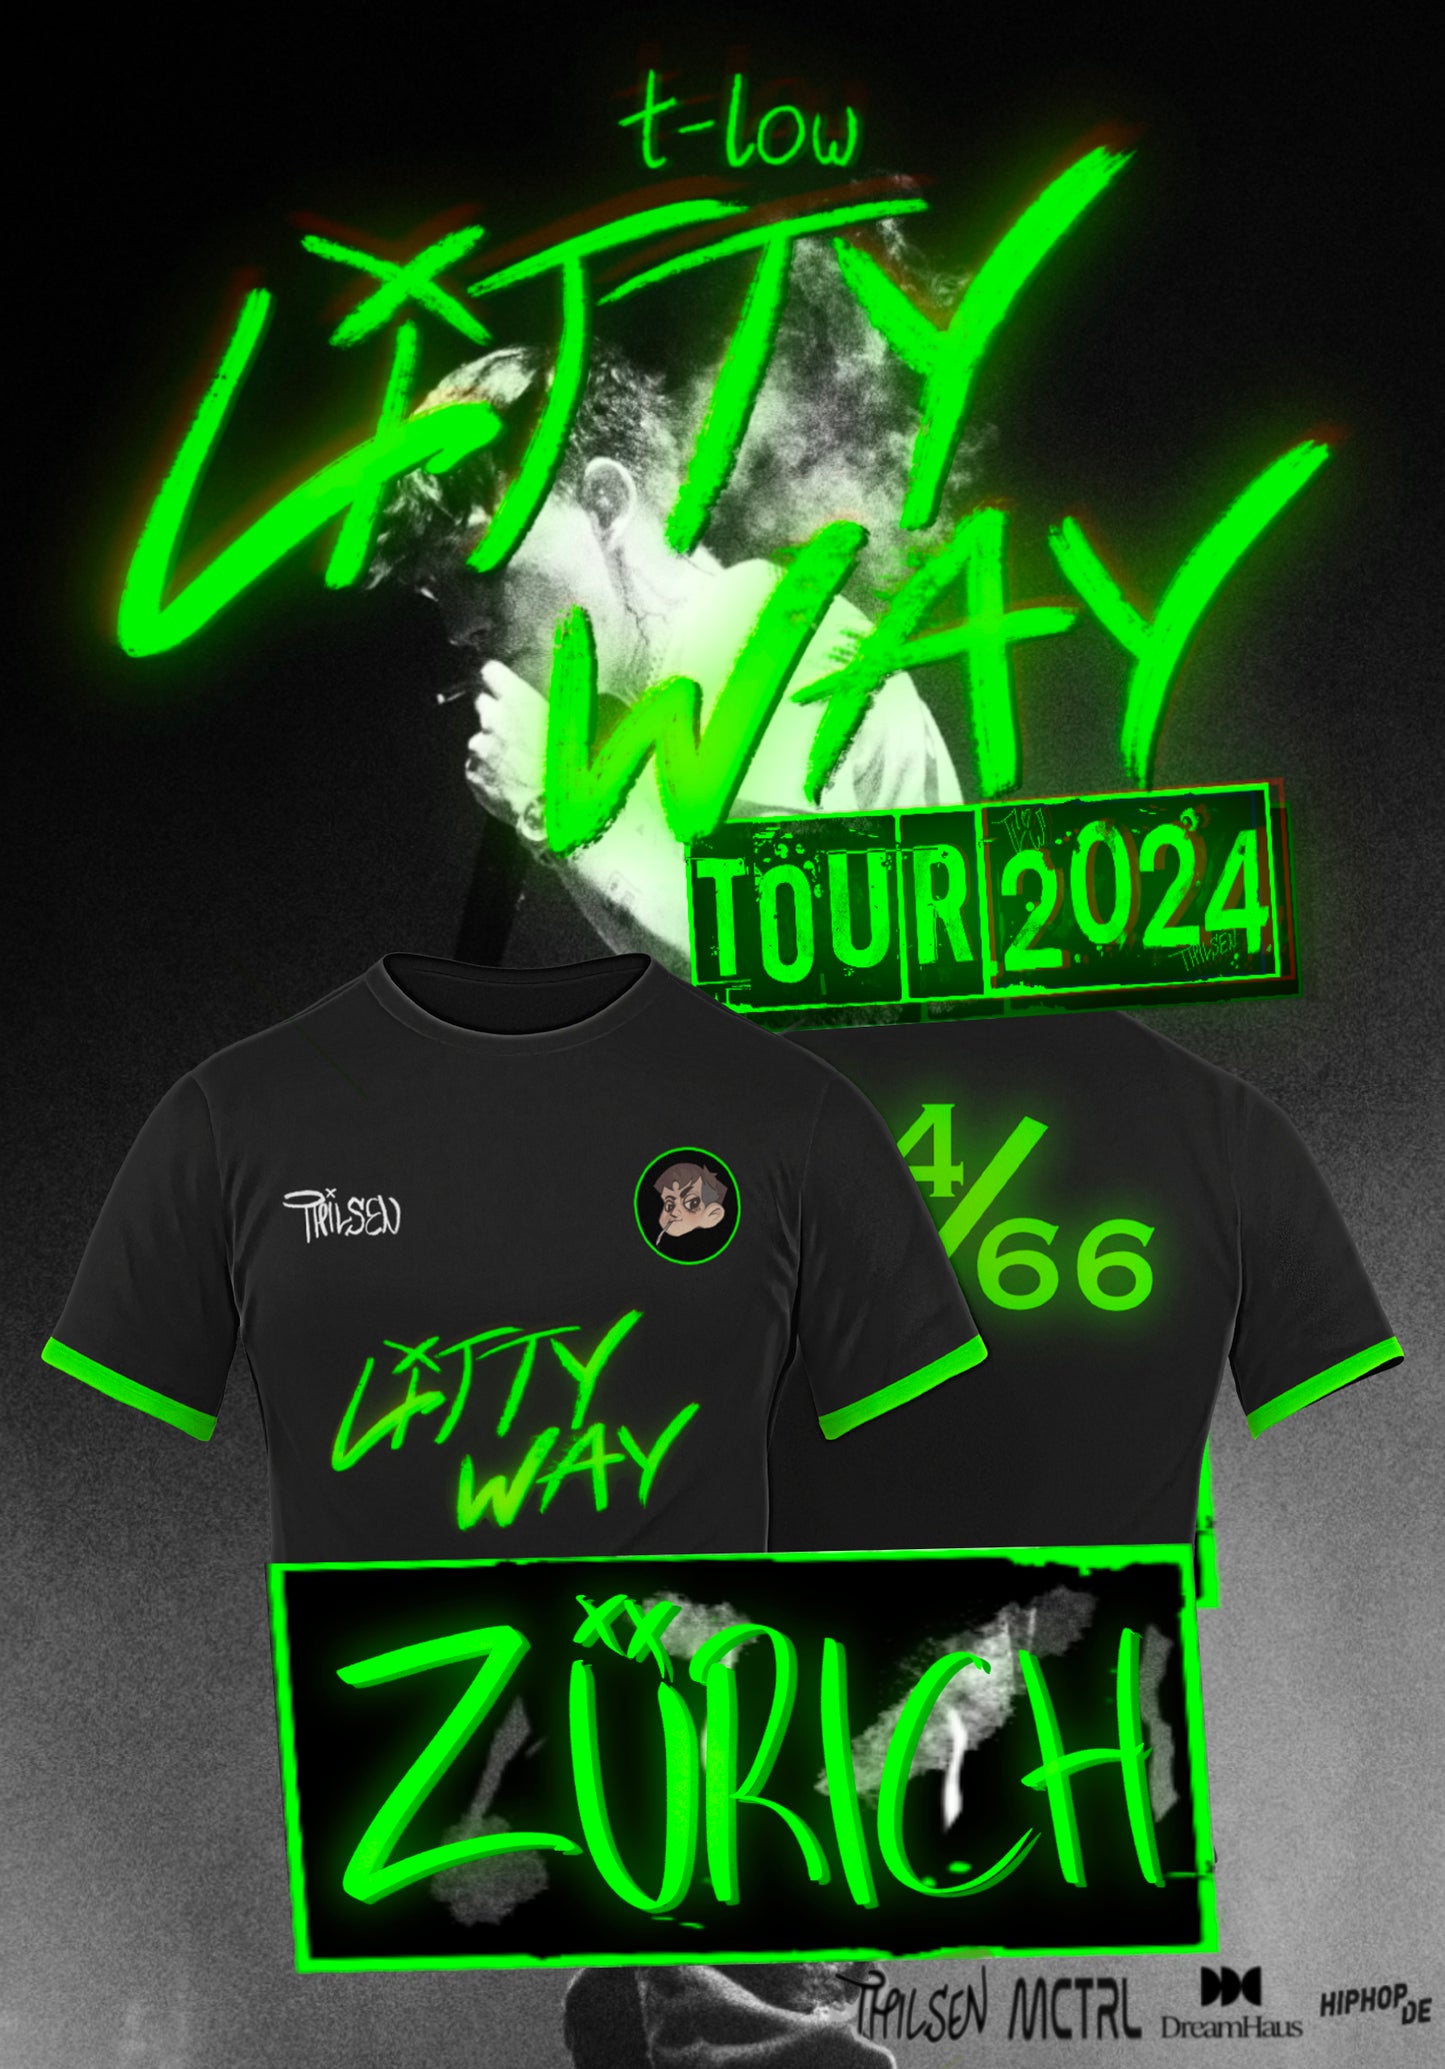 E-Ticket & Trikot Bundle - t-low Litty Way Tour 2024 Zürich